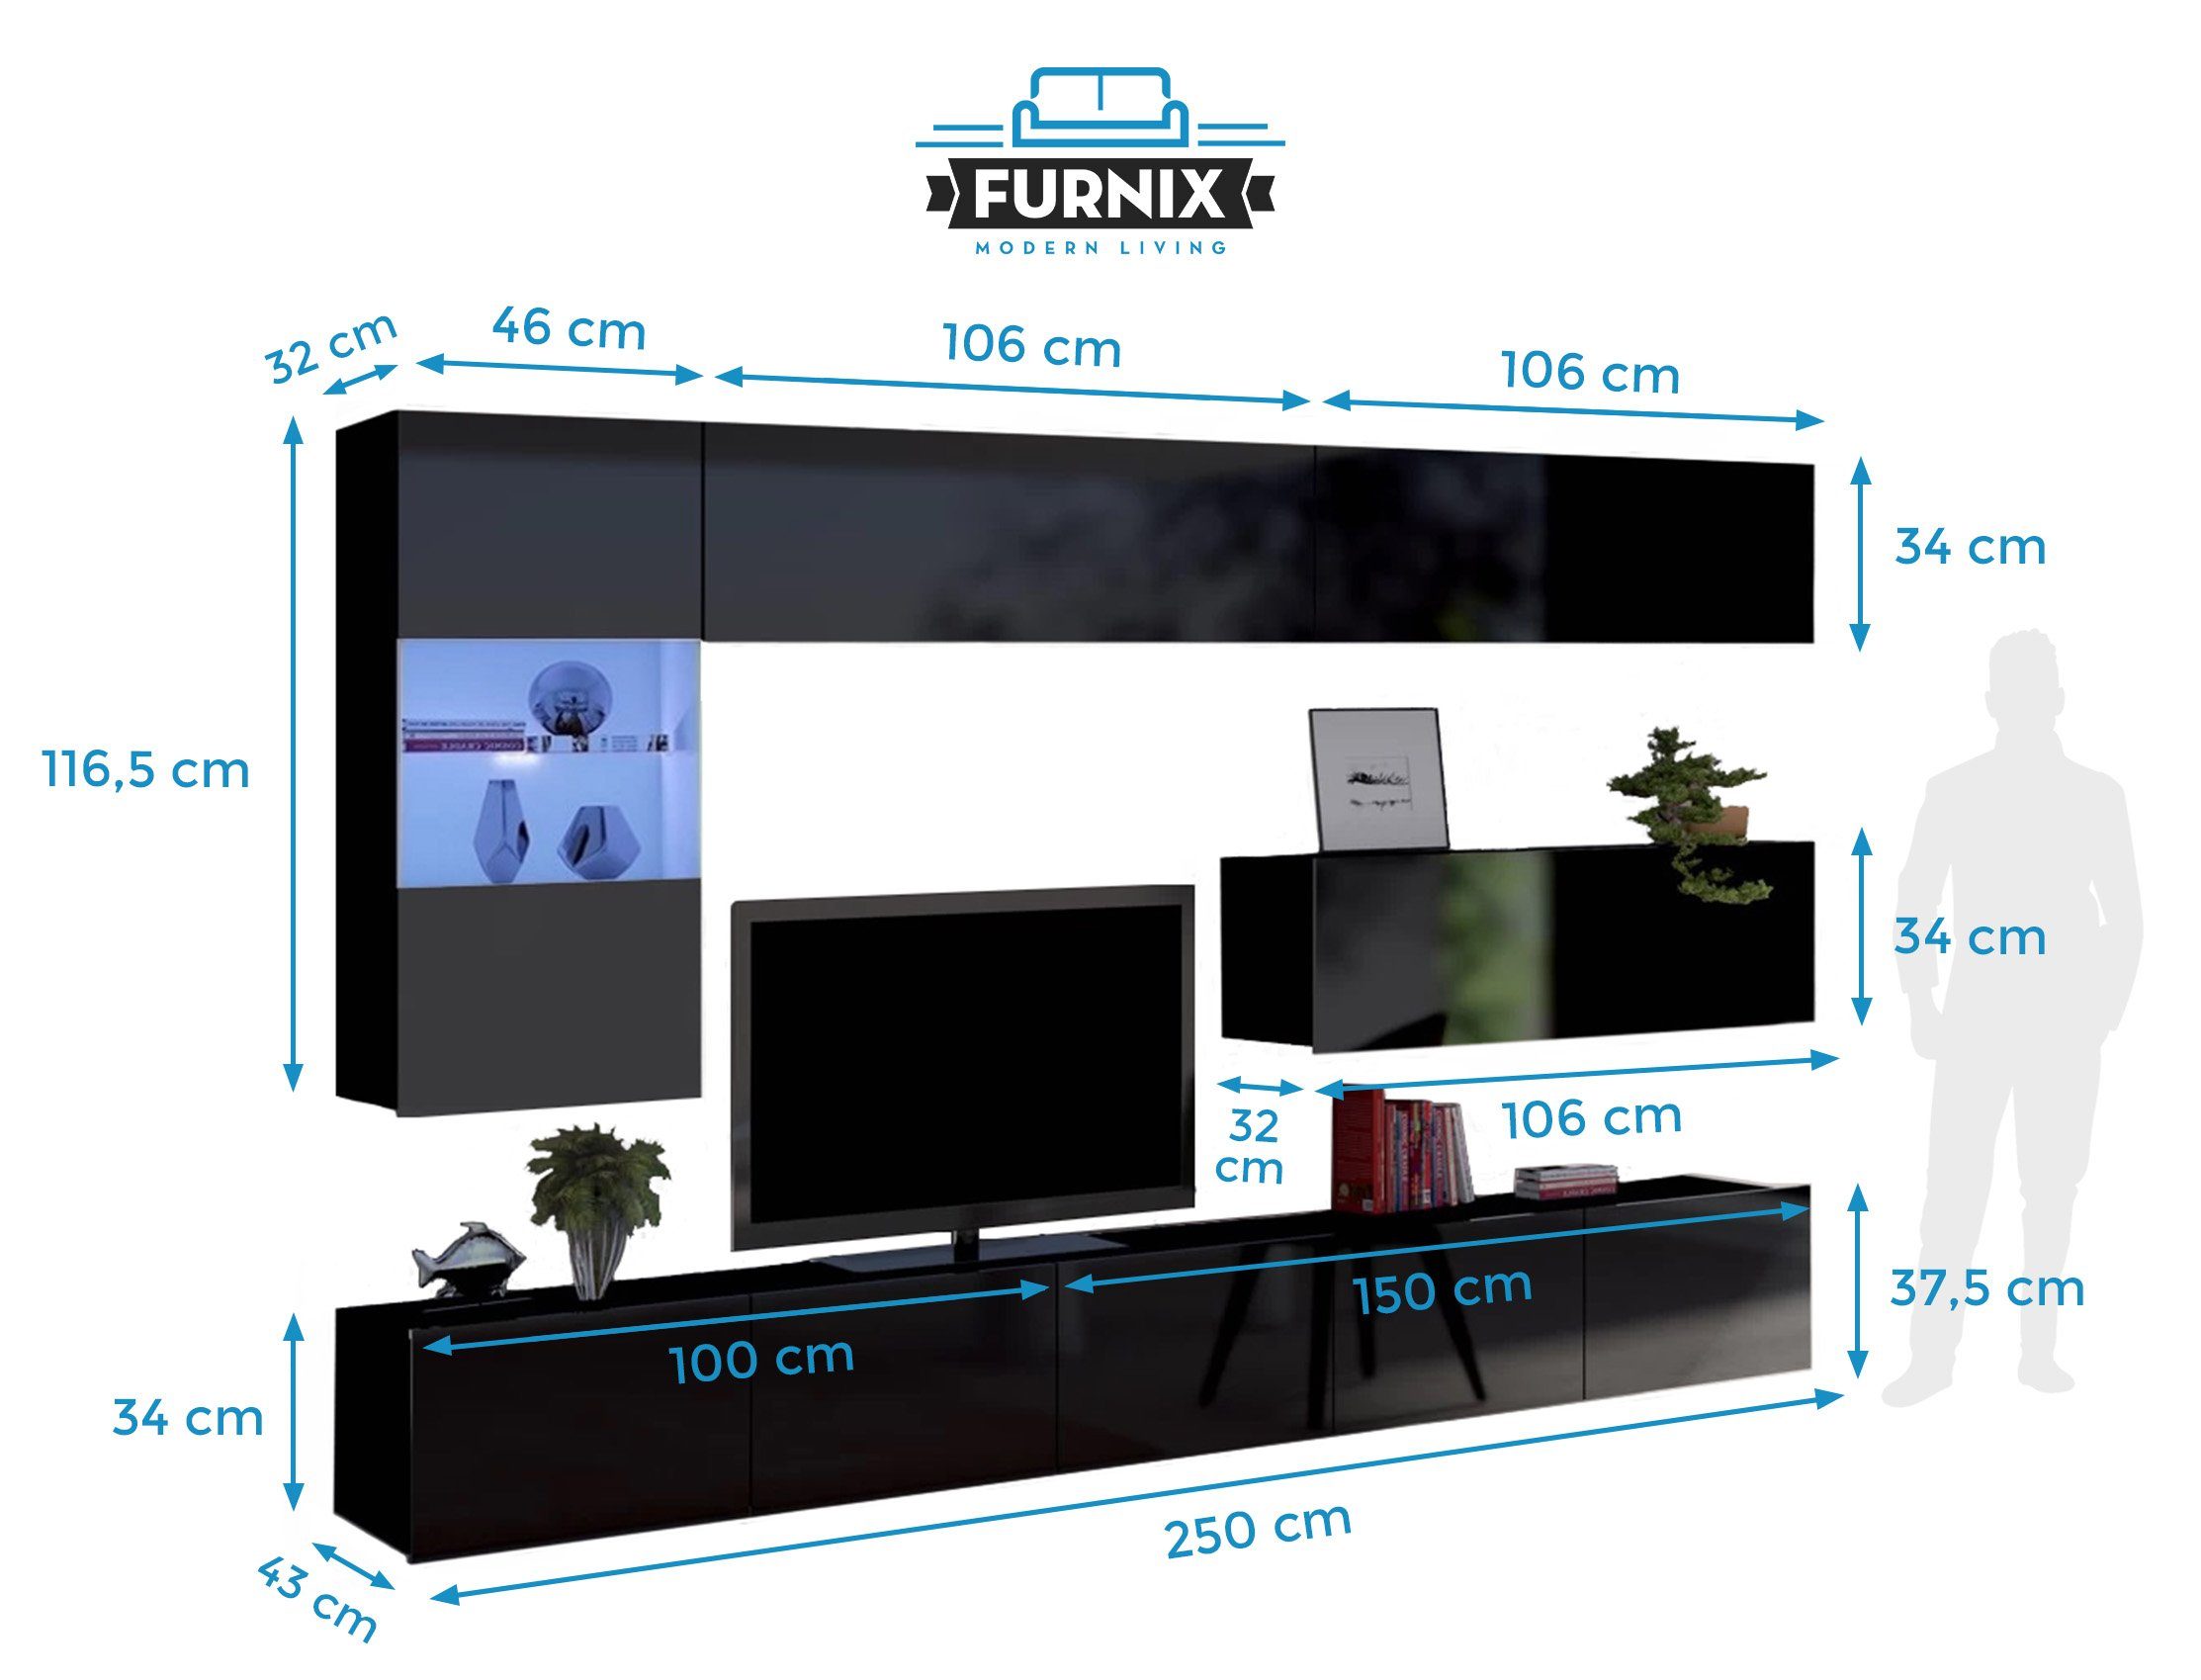 Furnix TV-Wand PUNE 4 Mediawand, Breite 260017652787 Wohnwand Auswahl, Möbelwand, cm, m Hochglanz 6 Schwarz teilig Glanz 2,55